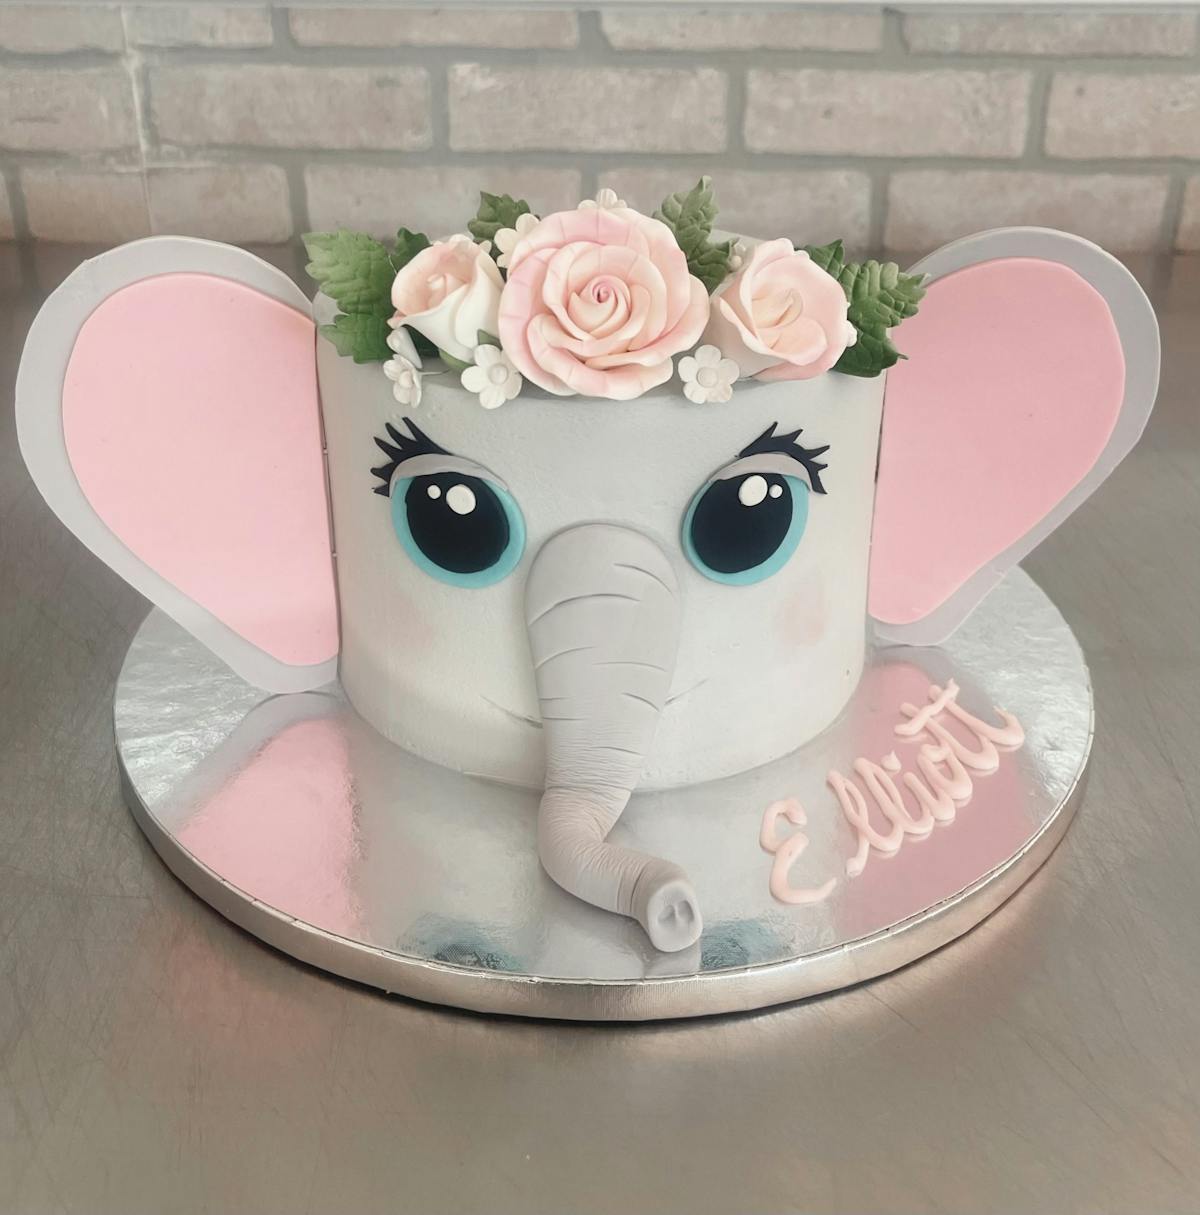 a cake with elephant shape